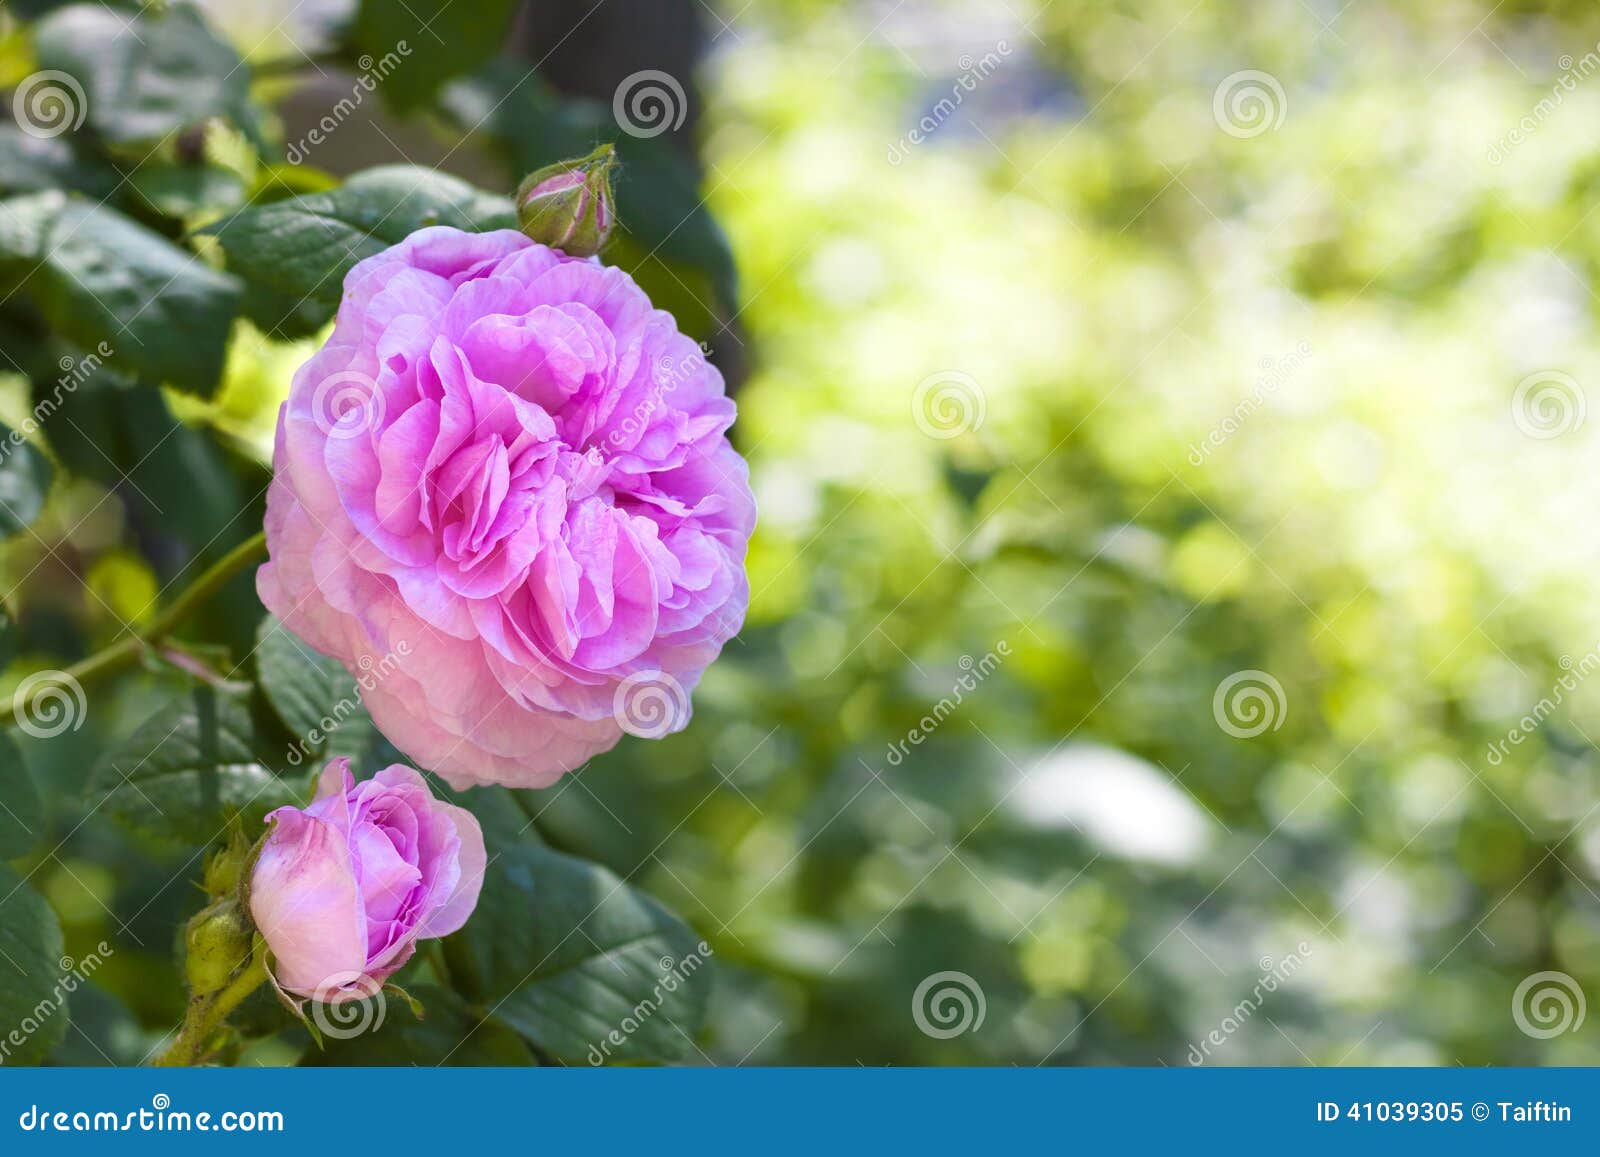 rosa centifolia (rose des peintres) flower